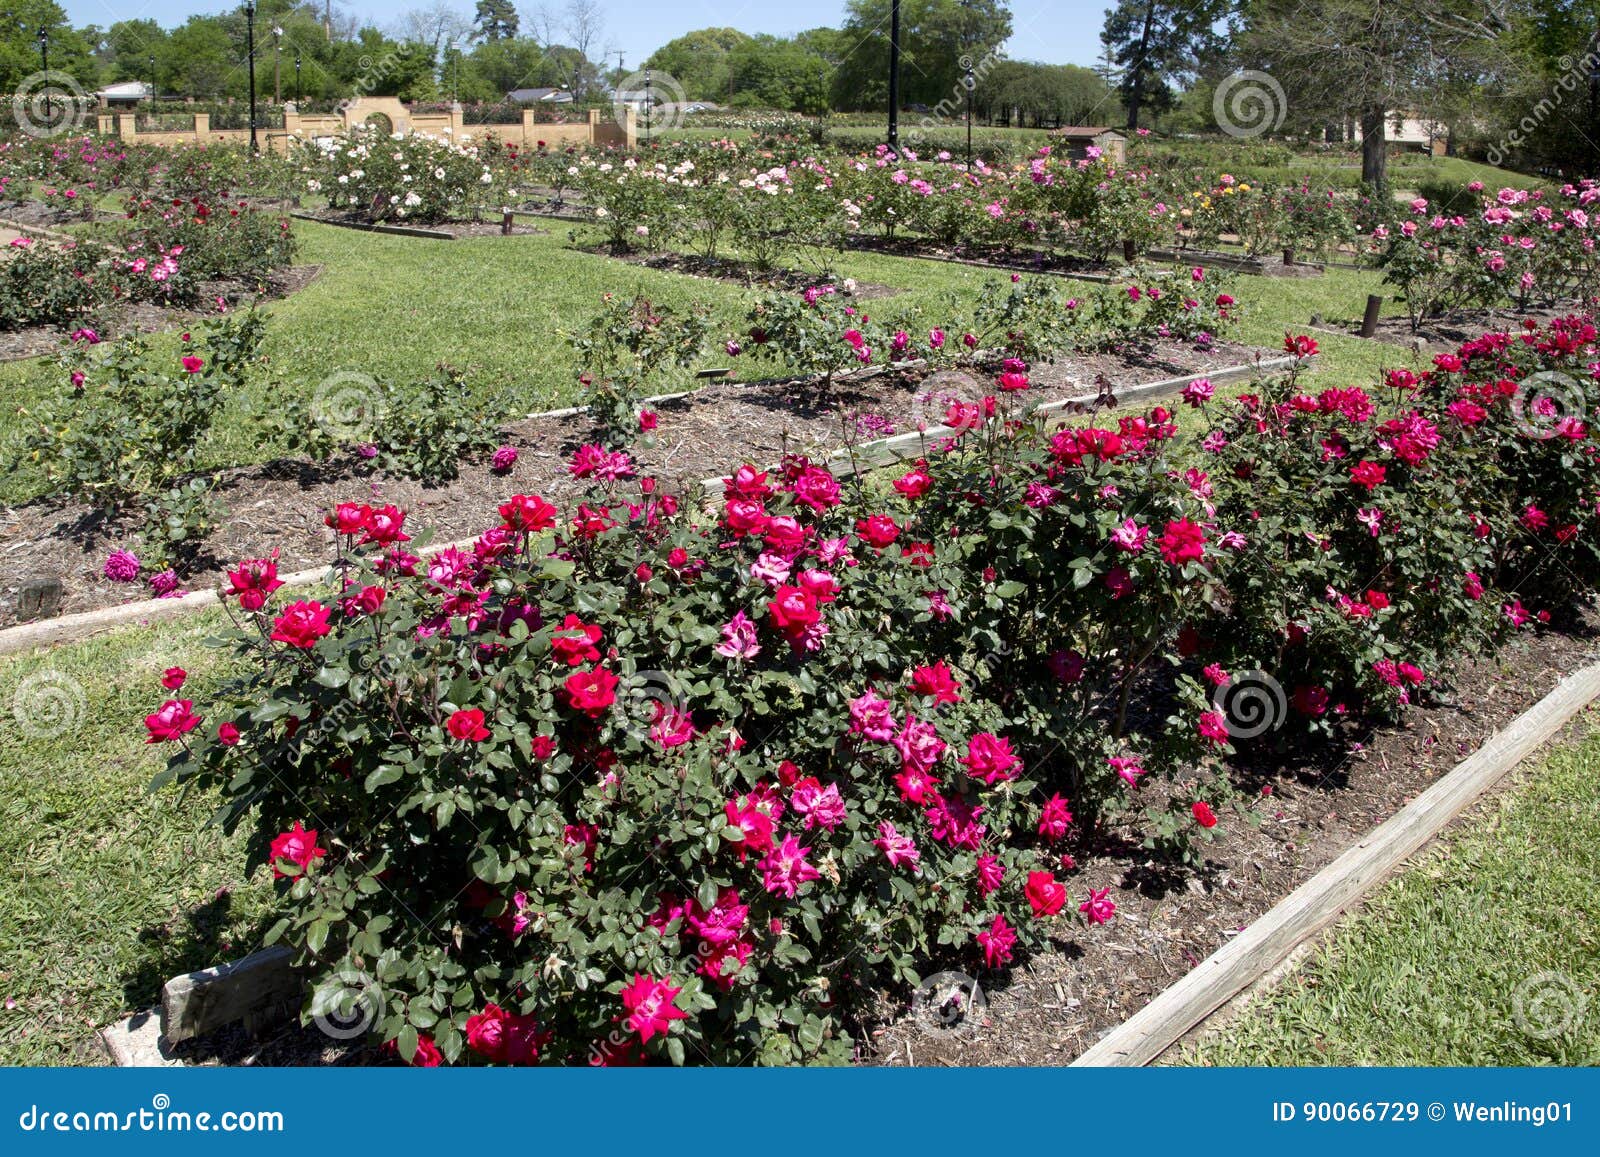 Nice Rose Garden In Tyler Springtime Stock Image Image Of Garden